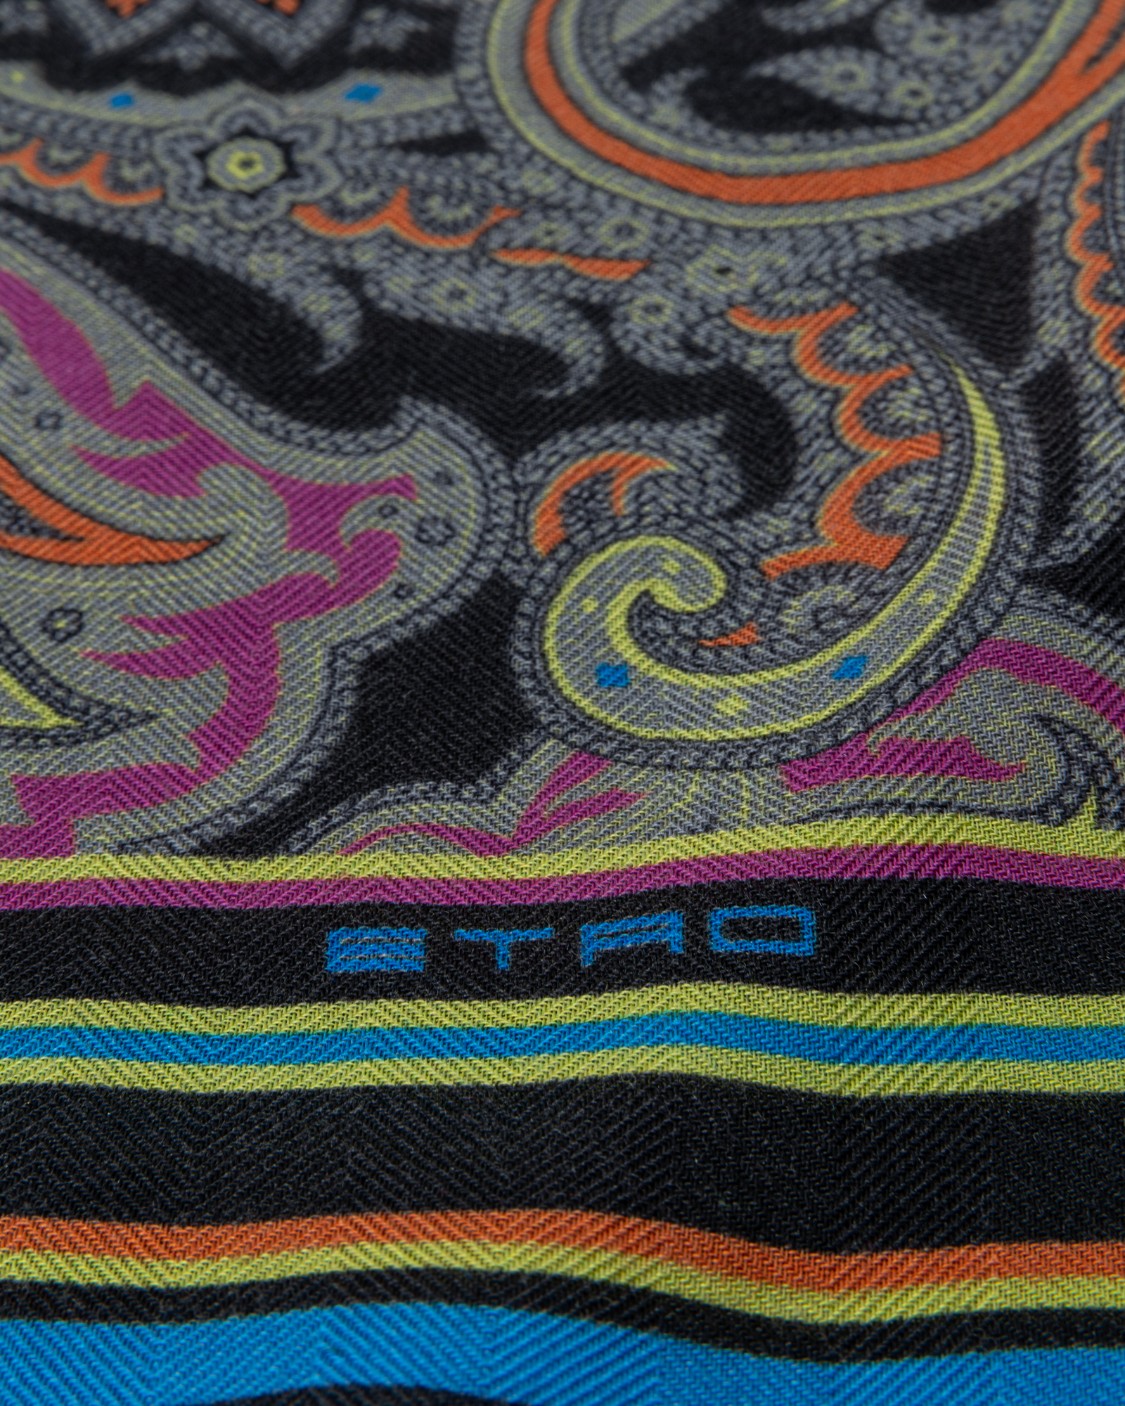 shop ETRO  Sciarpa: Etro sciarpa in lana e seta, decorata da una stampa Paisley multicolor e caratterizzata da un bordo sfrangiato.
Dimensioni: 68 x 200cm.
Composizione: 70% lana, 30% seta.
Made in Italy.. 11777 4025-750 number 9735101